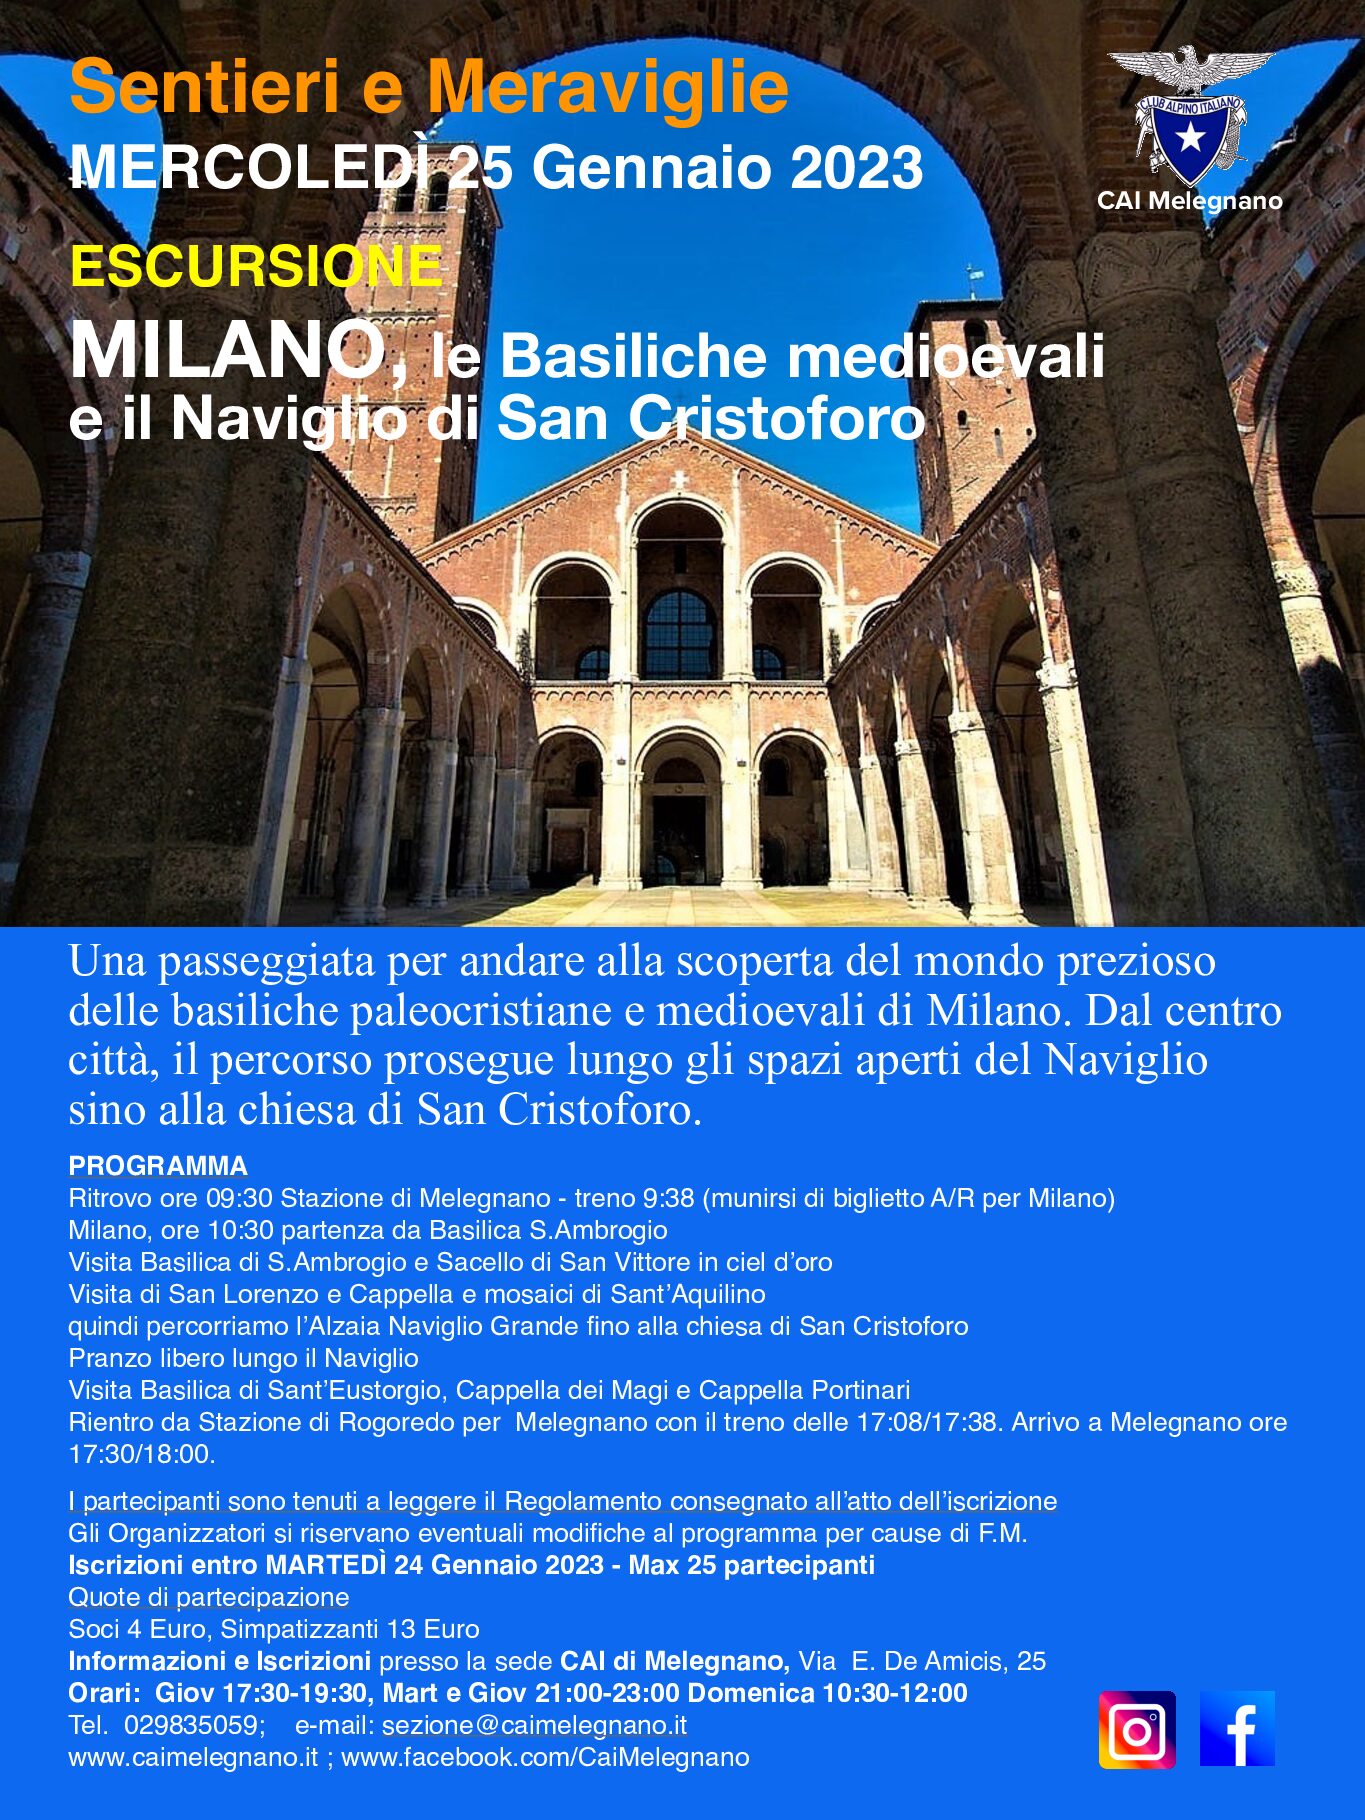 Escursione a MILANO: le Basiliche medioevali e il Naviglio di San Cristoforo